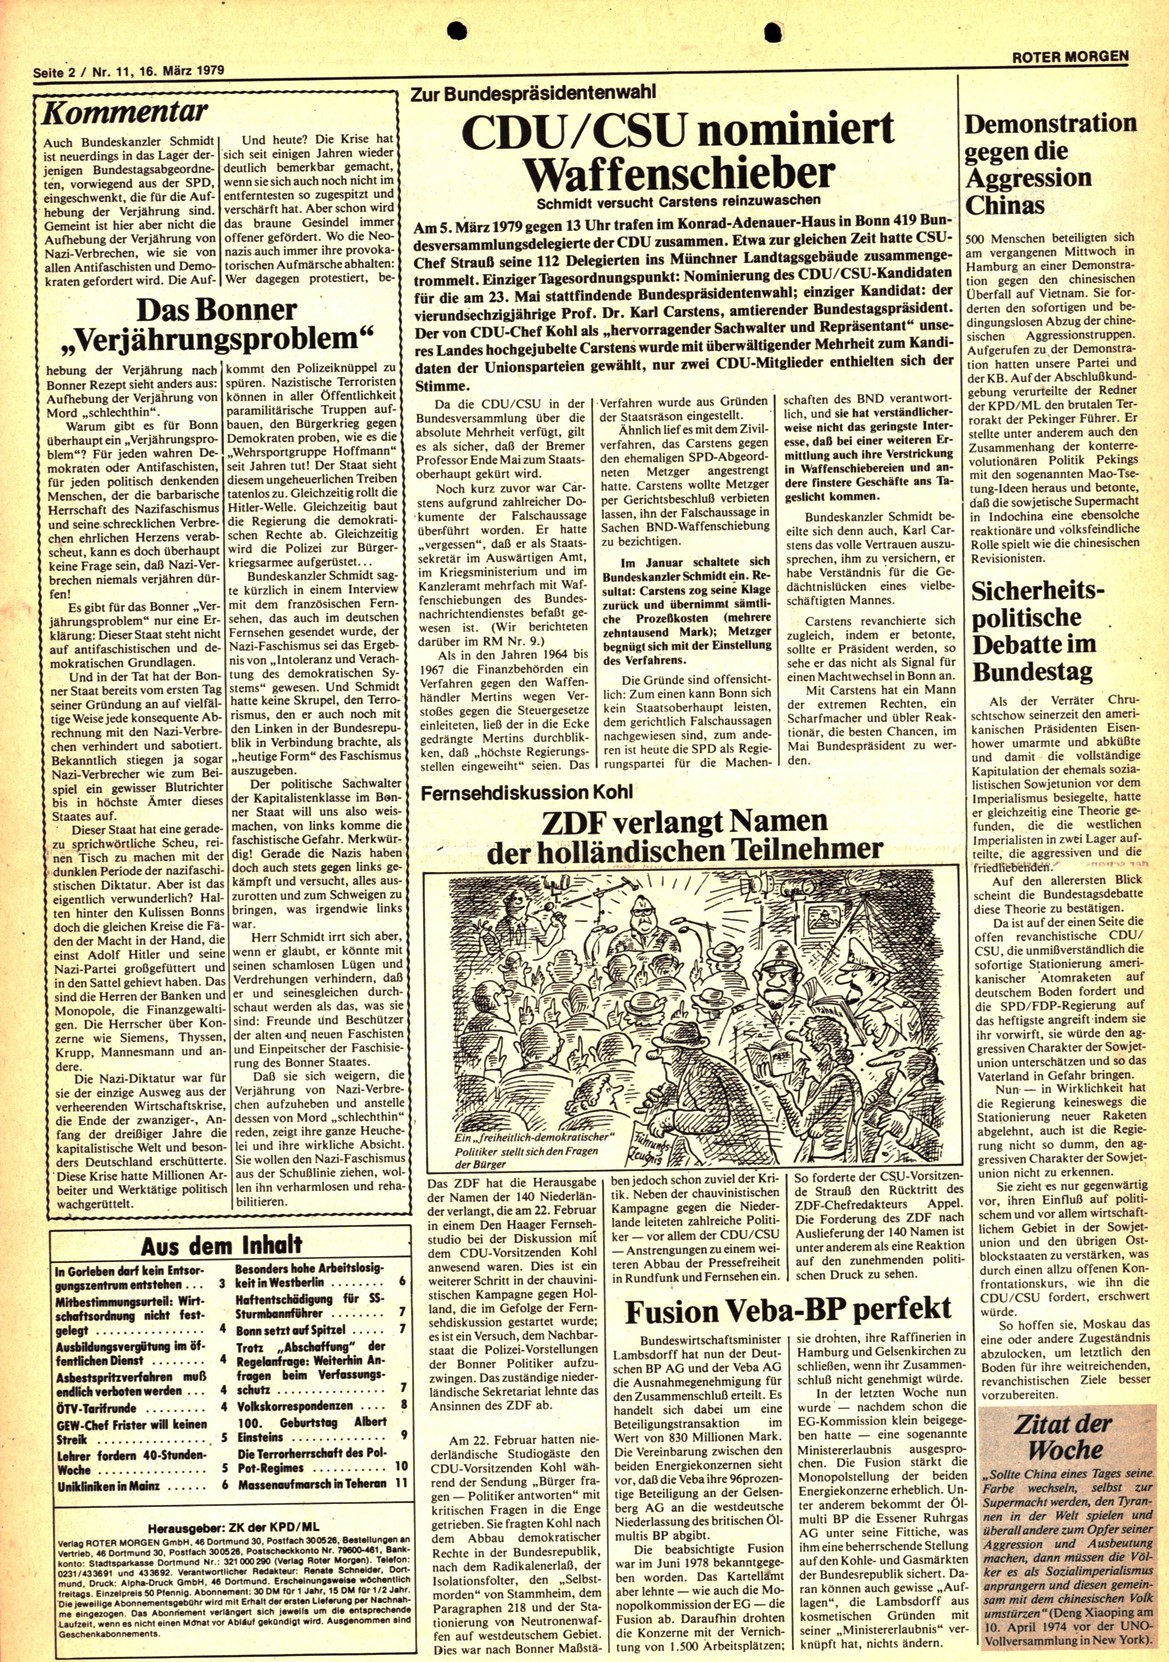 Roter Morgen, 13. Jg., 16. März 1979, Nr. 11, Seite 2